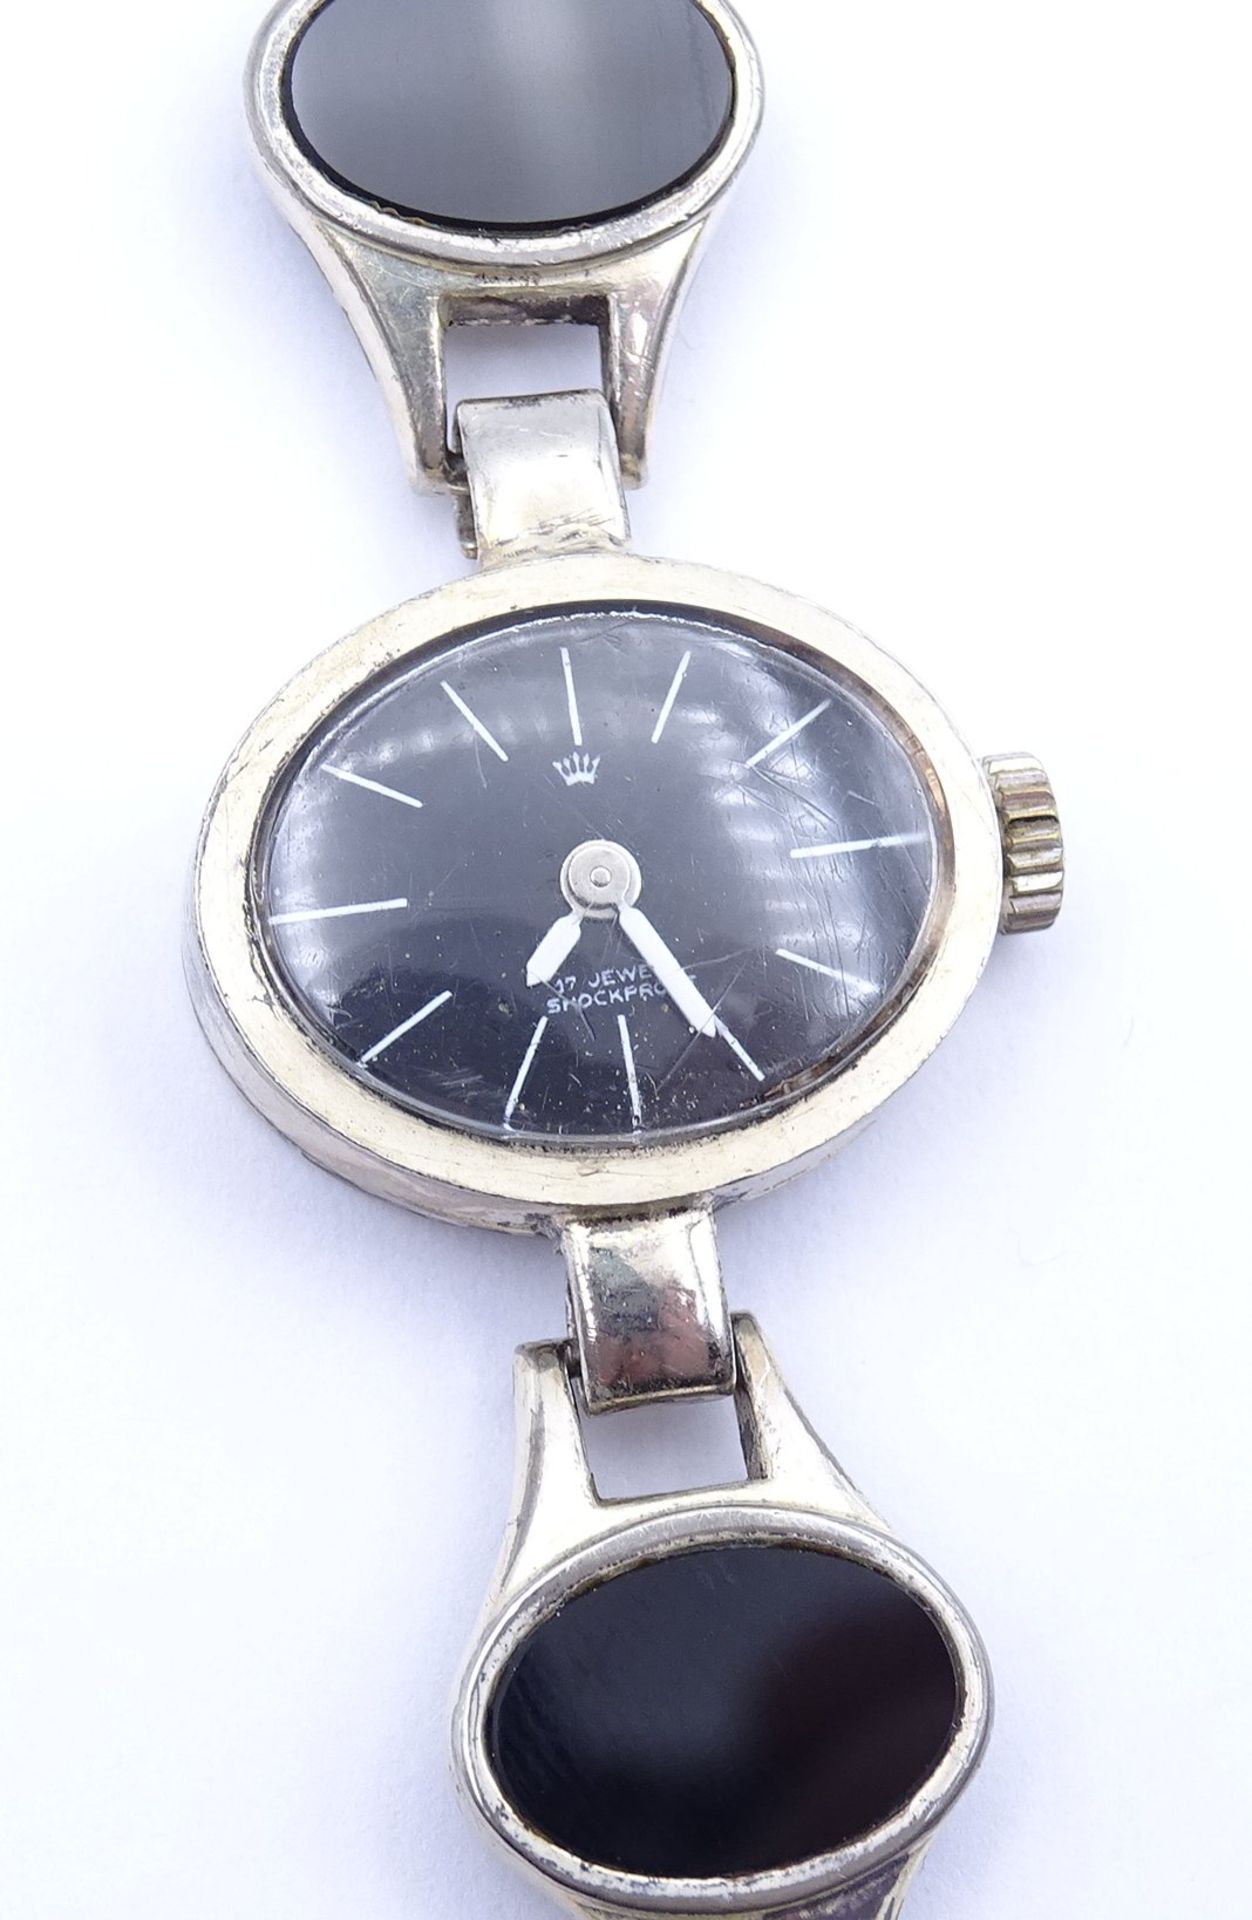 Damen Armbanduhr , Vollsilber 0.835, mechanisch, Werk läuft, mit Onyx Besatz, ges.Gew. 26,8g. - Image 3 of 4